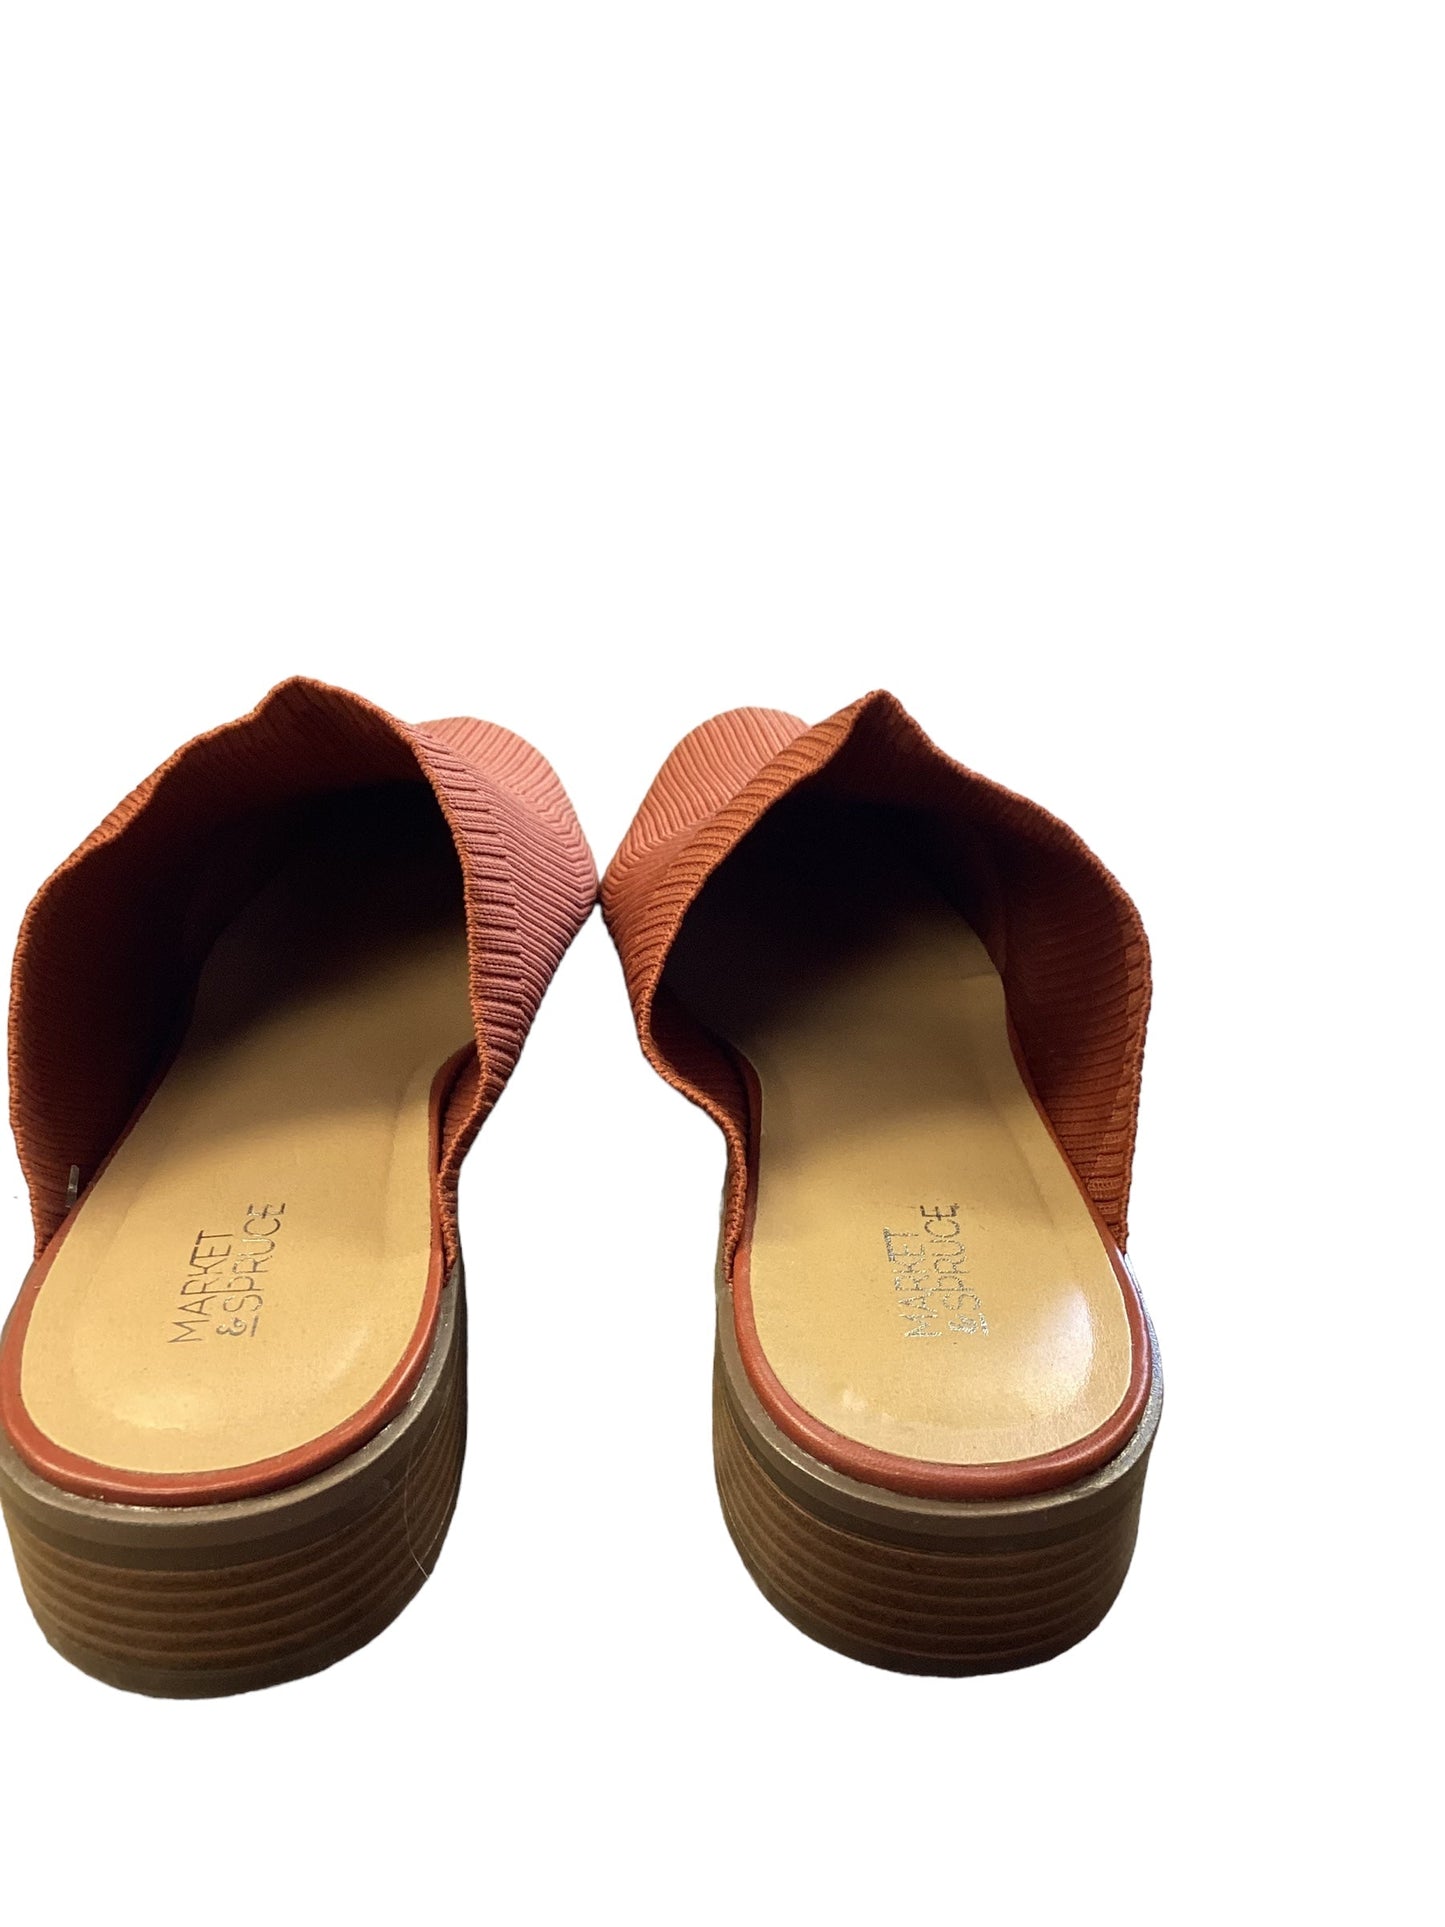 Orange Shoes Flats Market & Spruce, Size 11